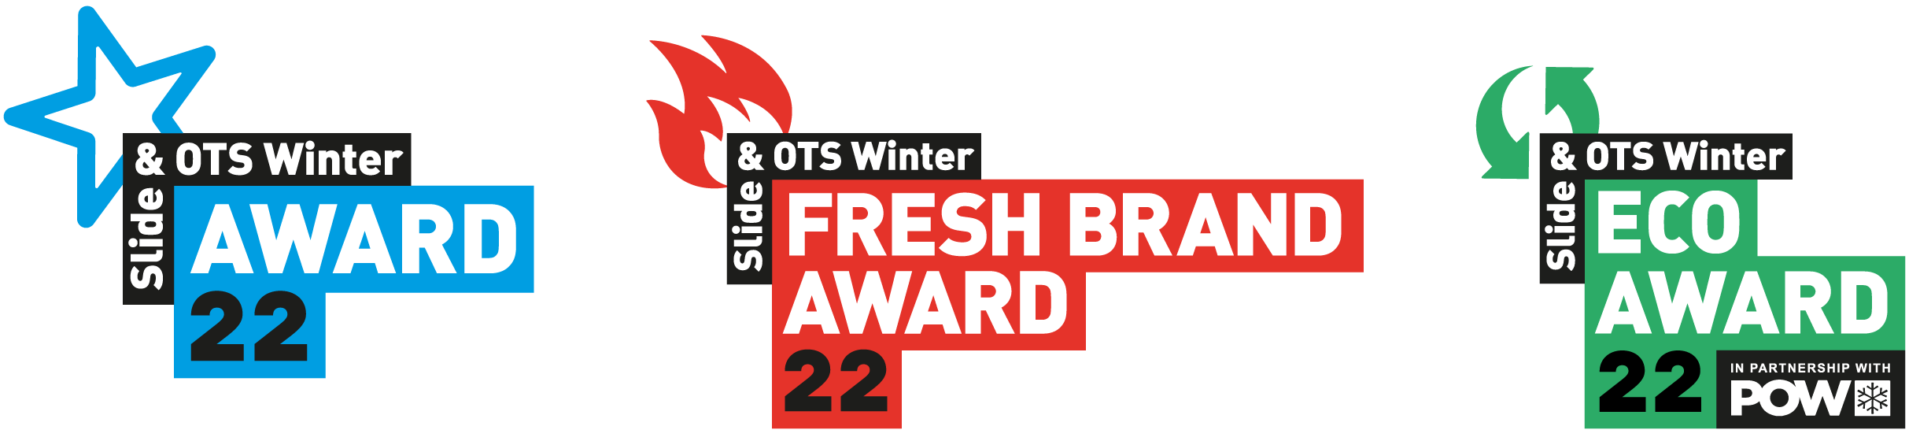 Slide & OTS Winter Awards logos